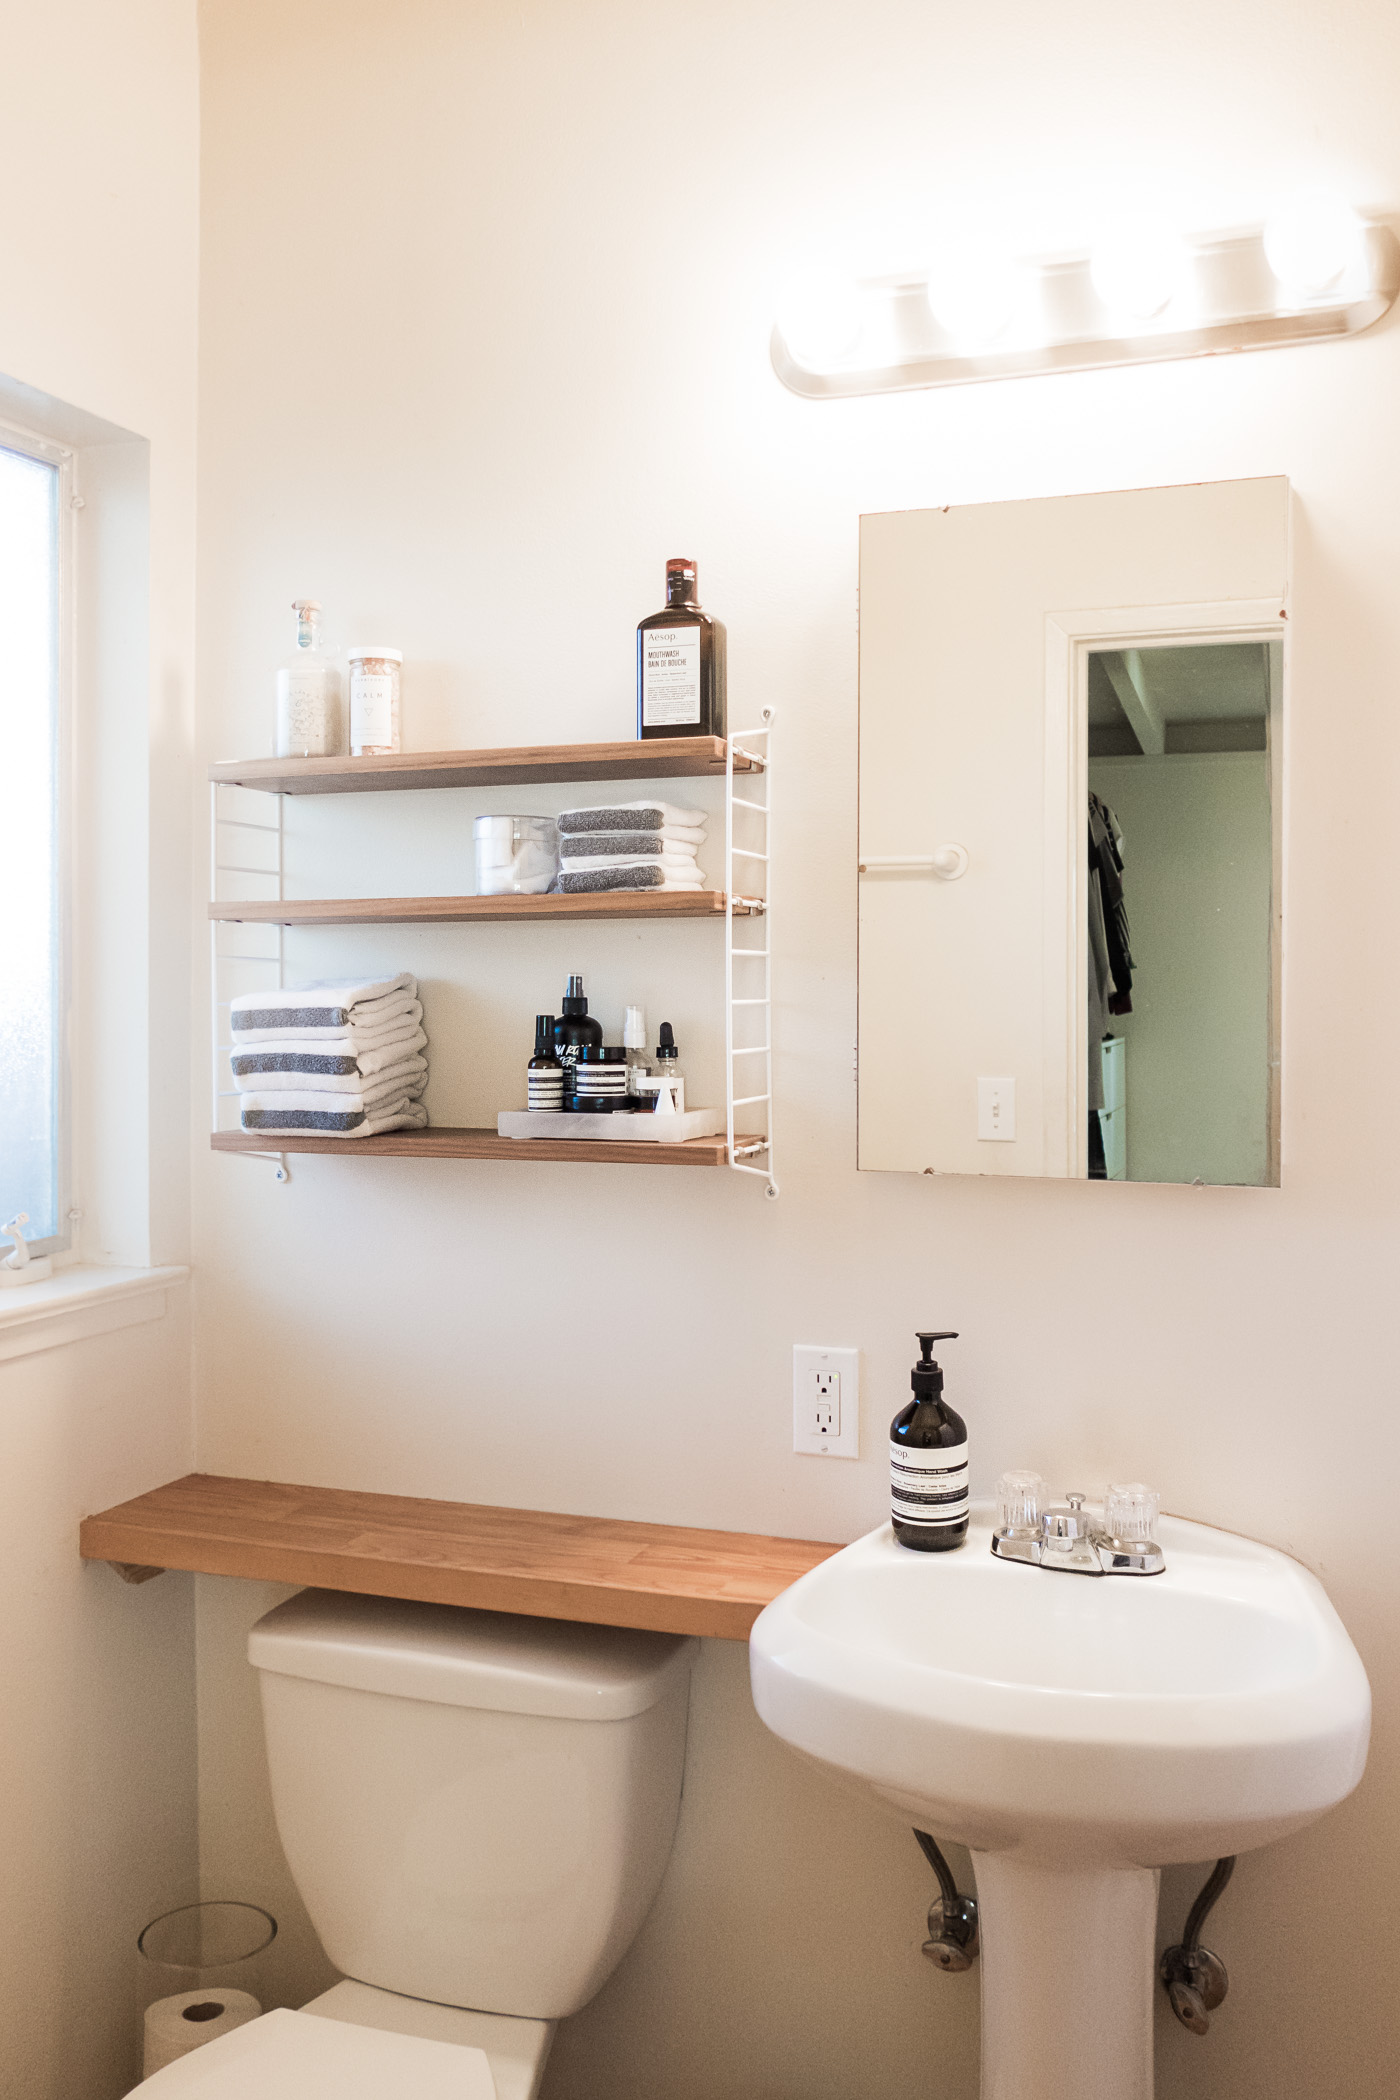 23 Bathrooms Small Spaces Ideas That Make An Impact - Cute Homes